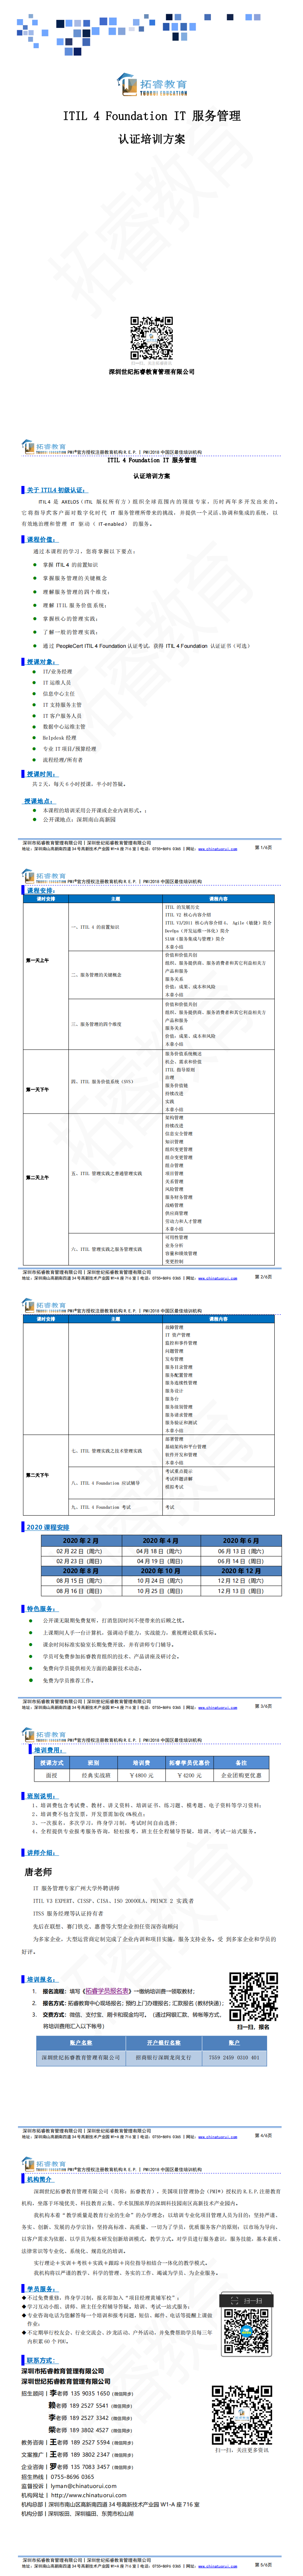 拓睿丨ITIL 2011项目管理认证培训_0.png